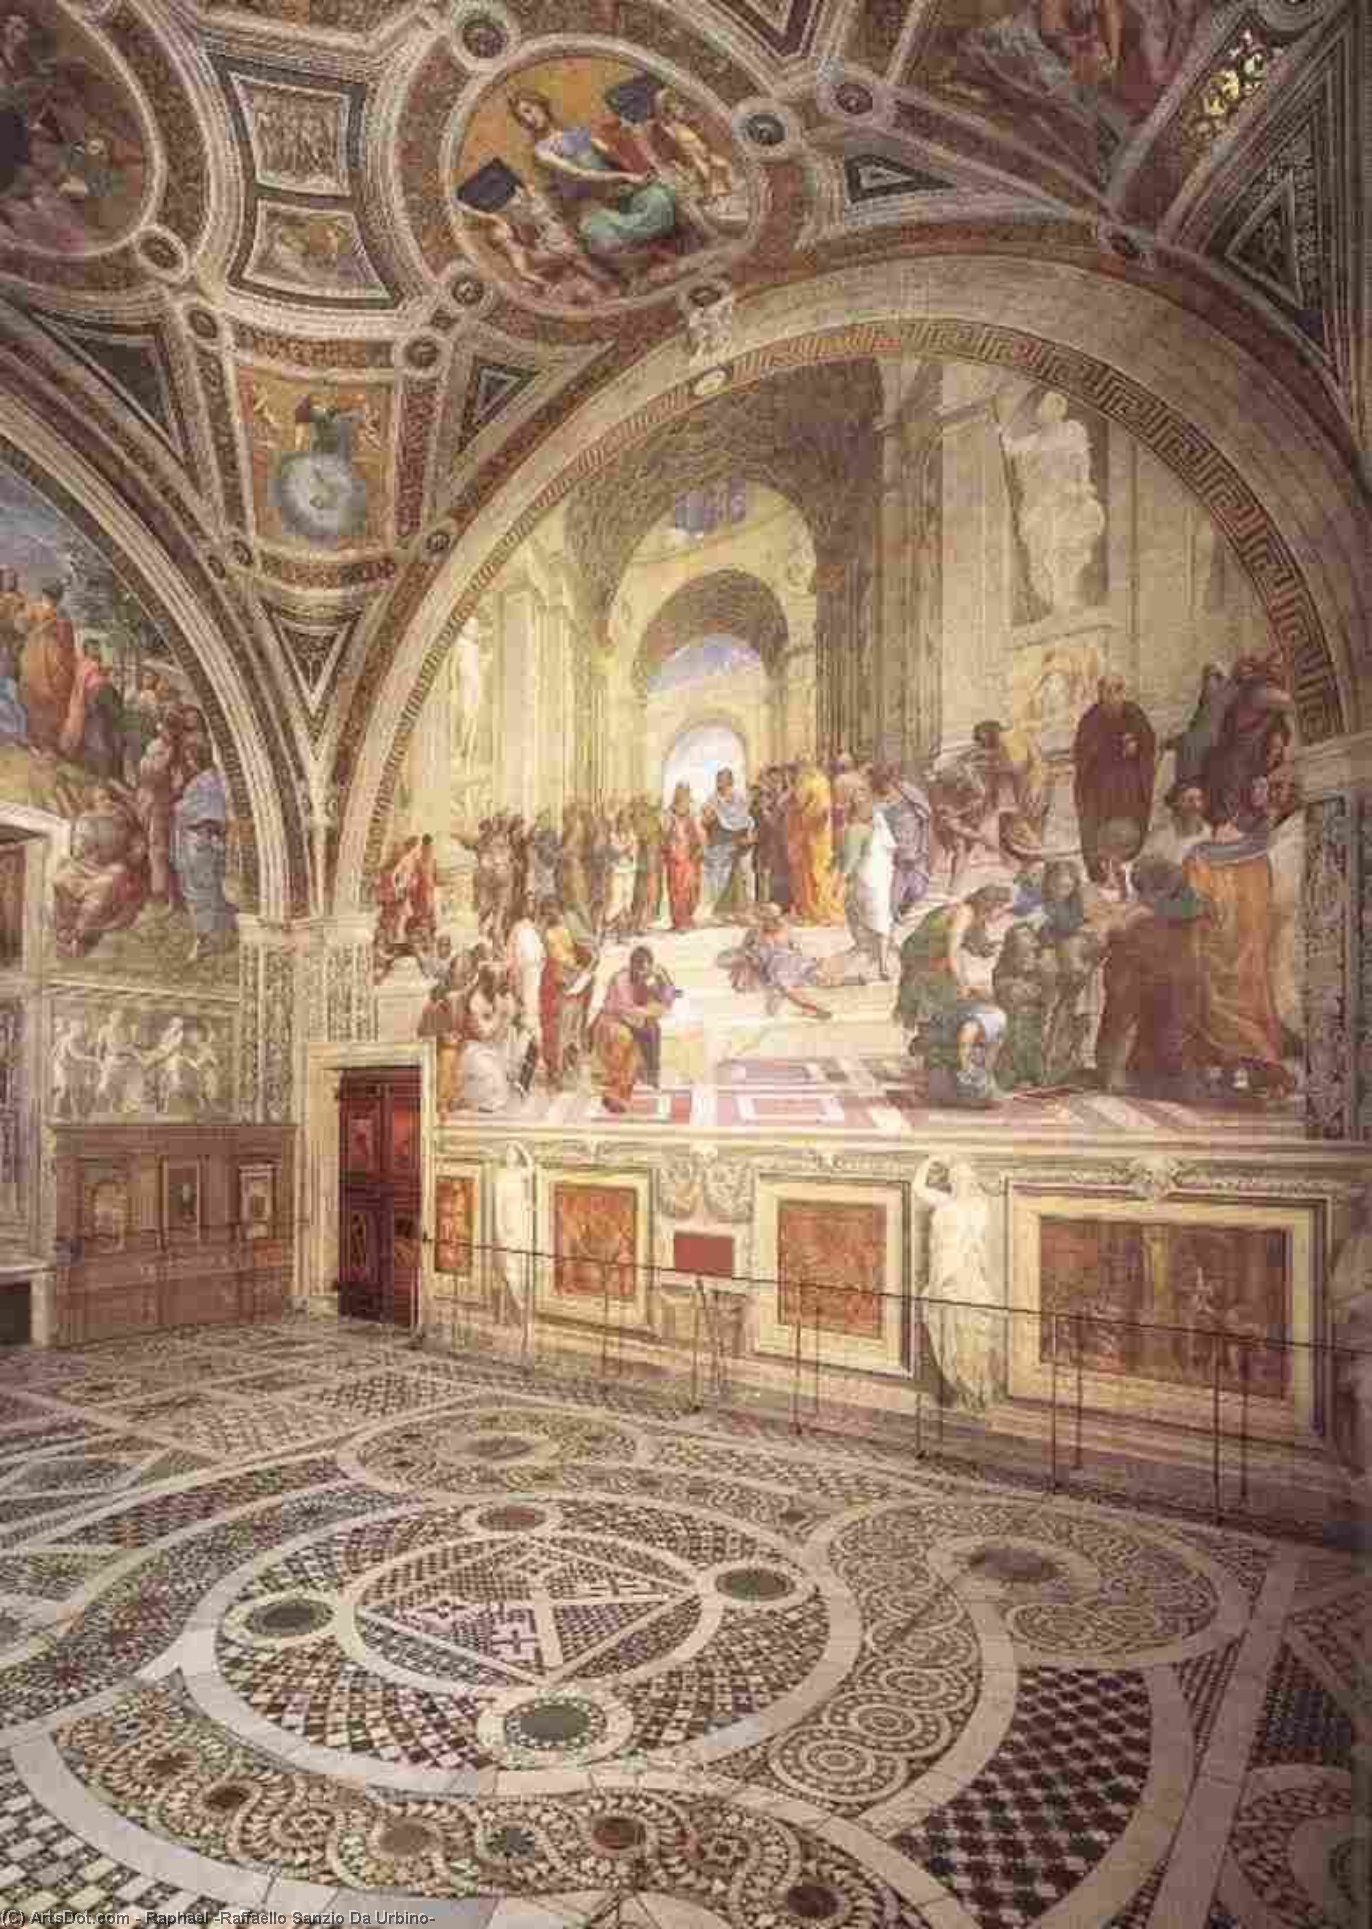 WikiOO.org - Encyclopedia of Fine Arts - Maľba, Artwork Raphael (Raffaello Sanzio Da Urbino) - Stanze Vaticane - View of the Stanza della Segnatura